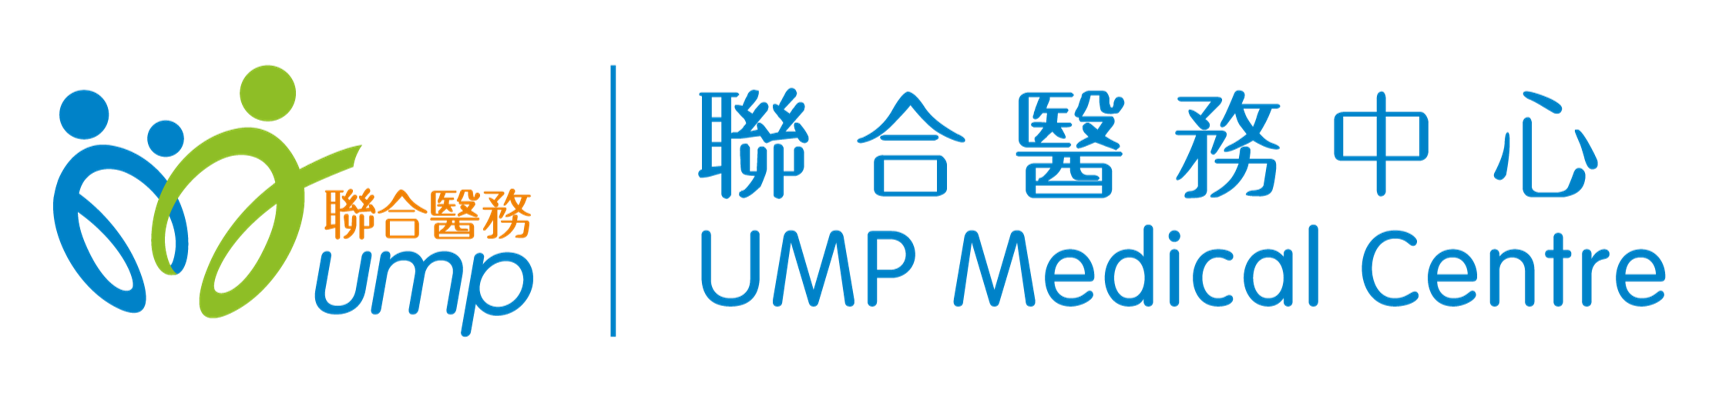 UMP Medical Centre